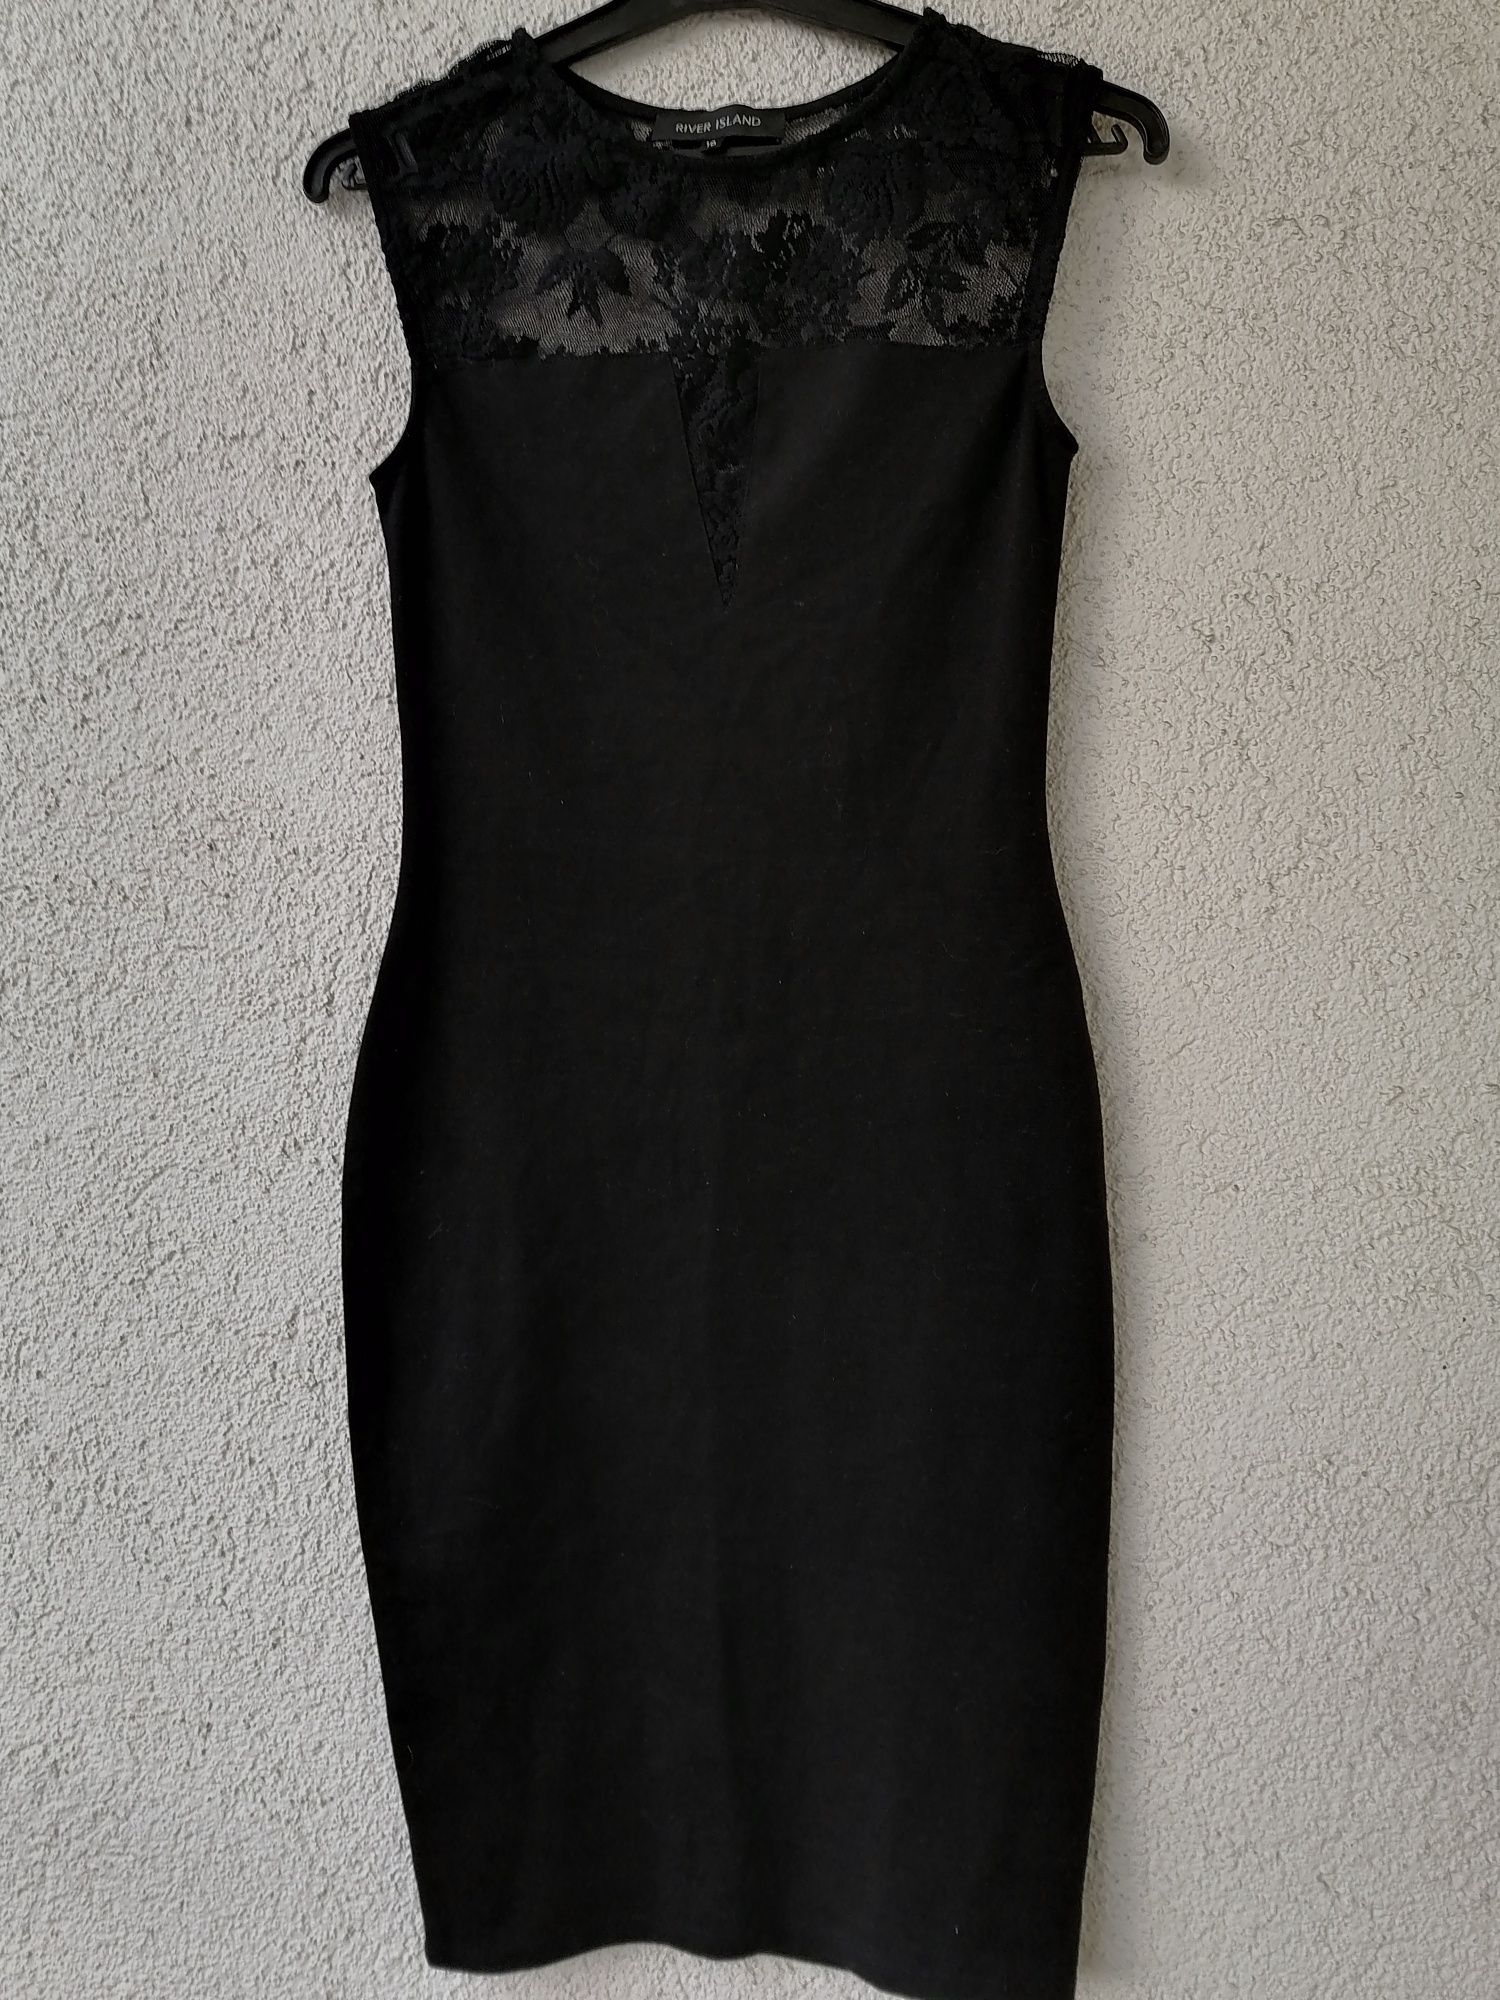 Sukienka czarna r S